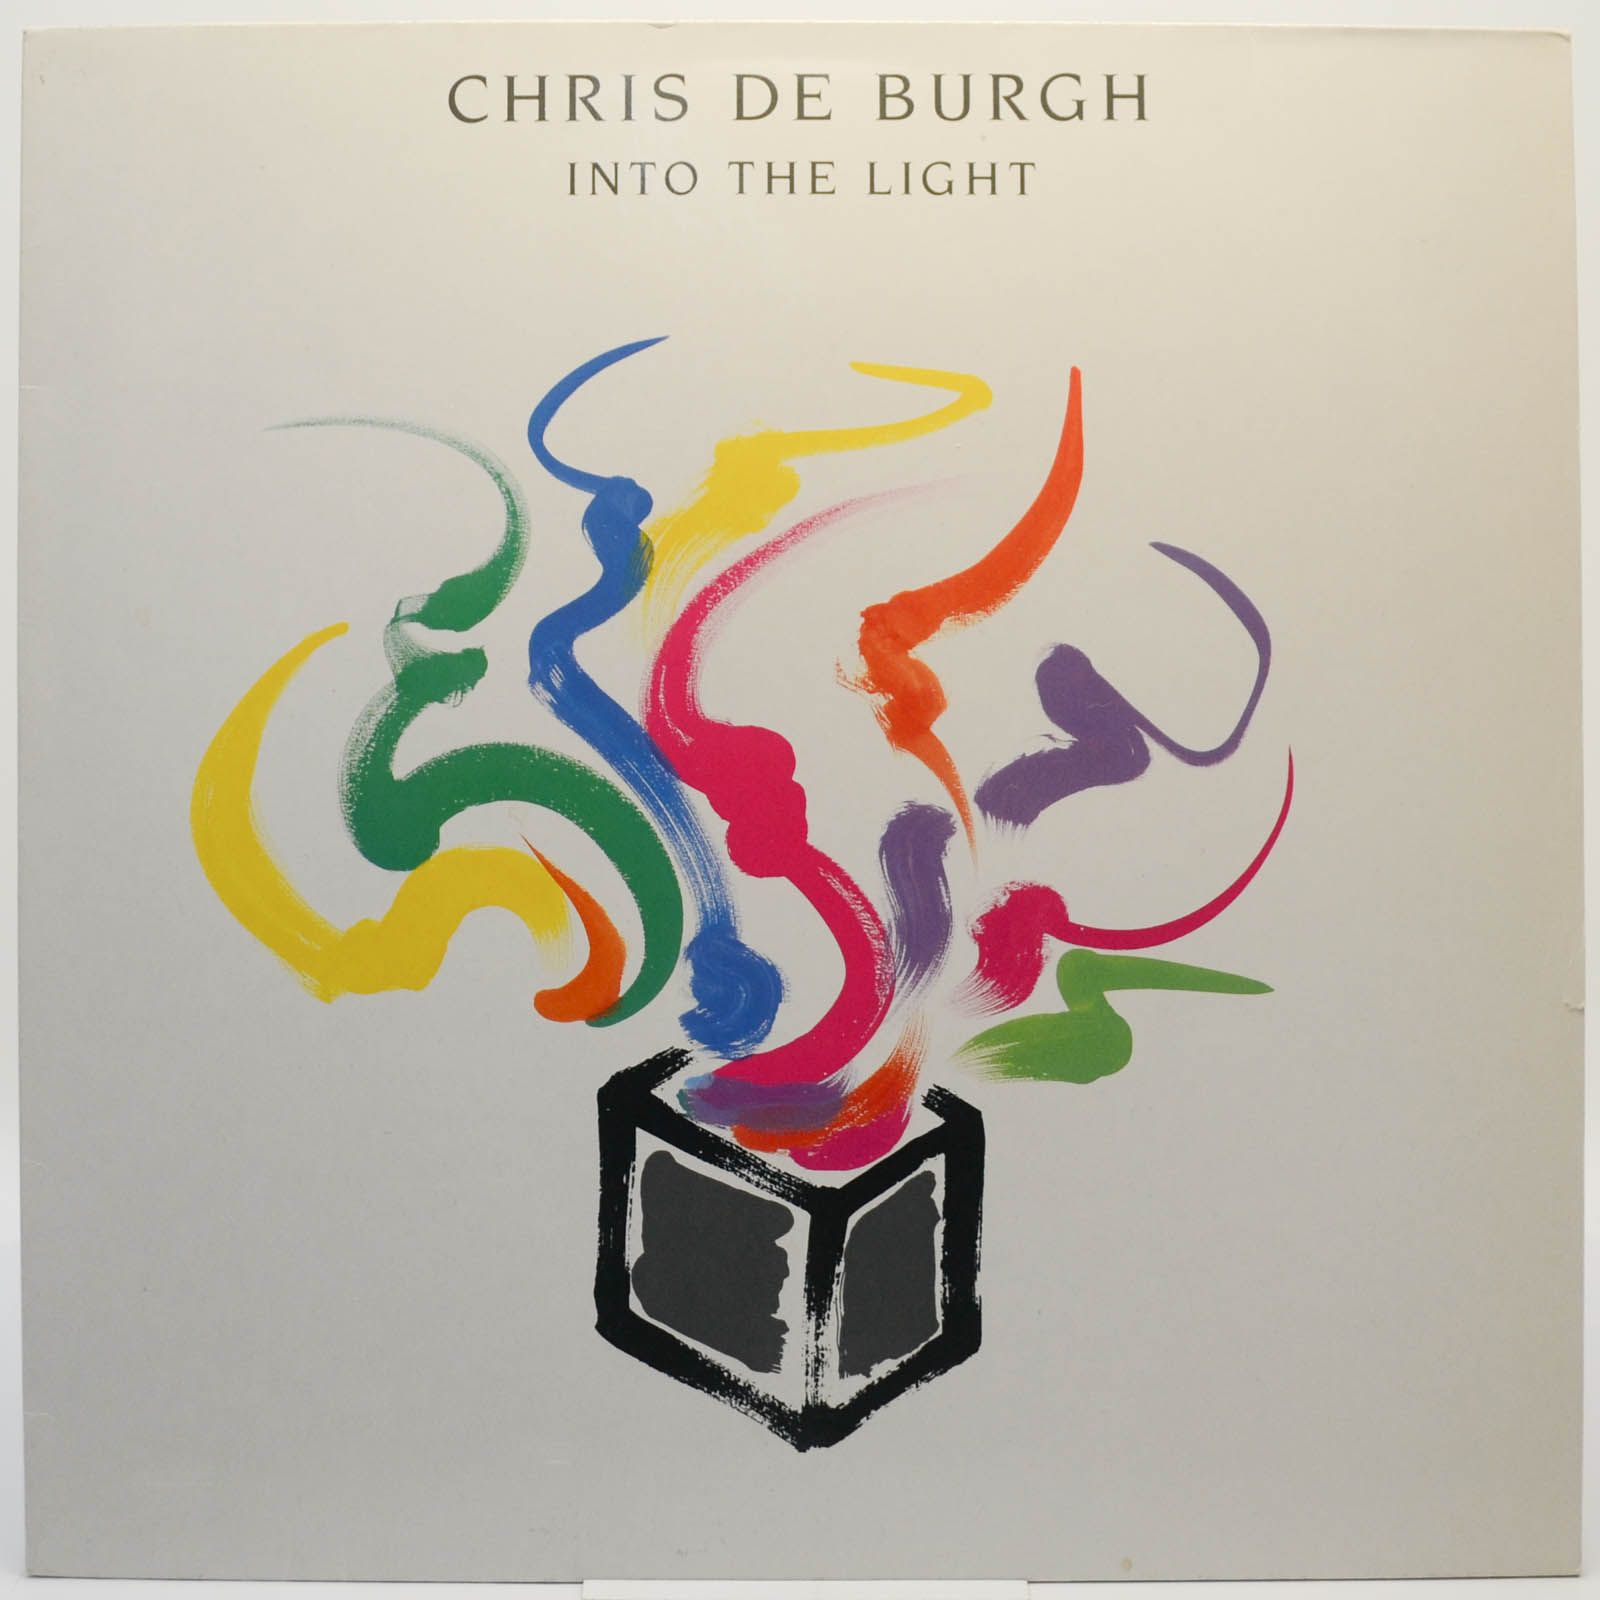 Chris de Burgh — Into The Light, 1986